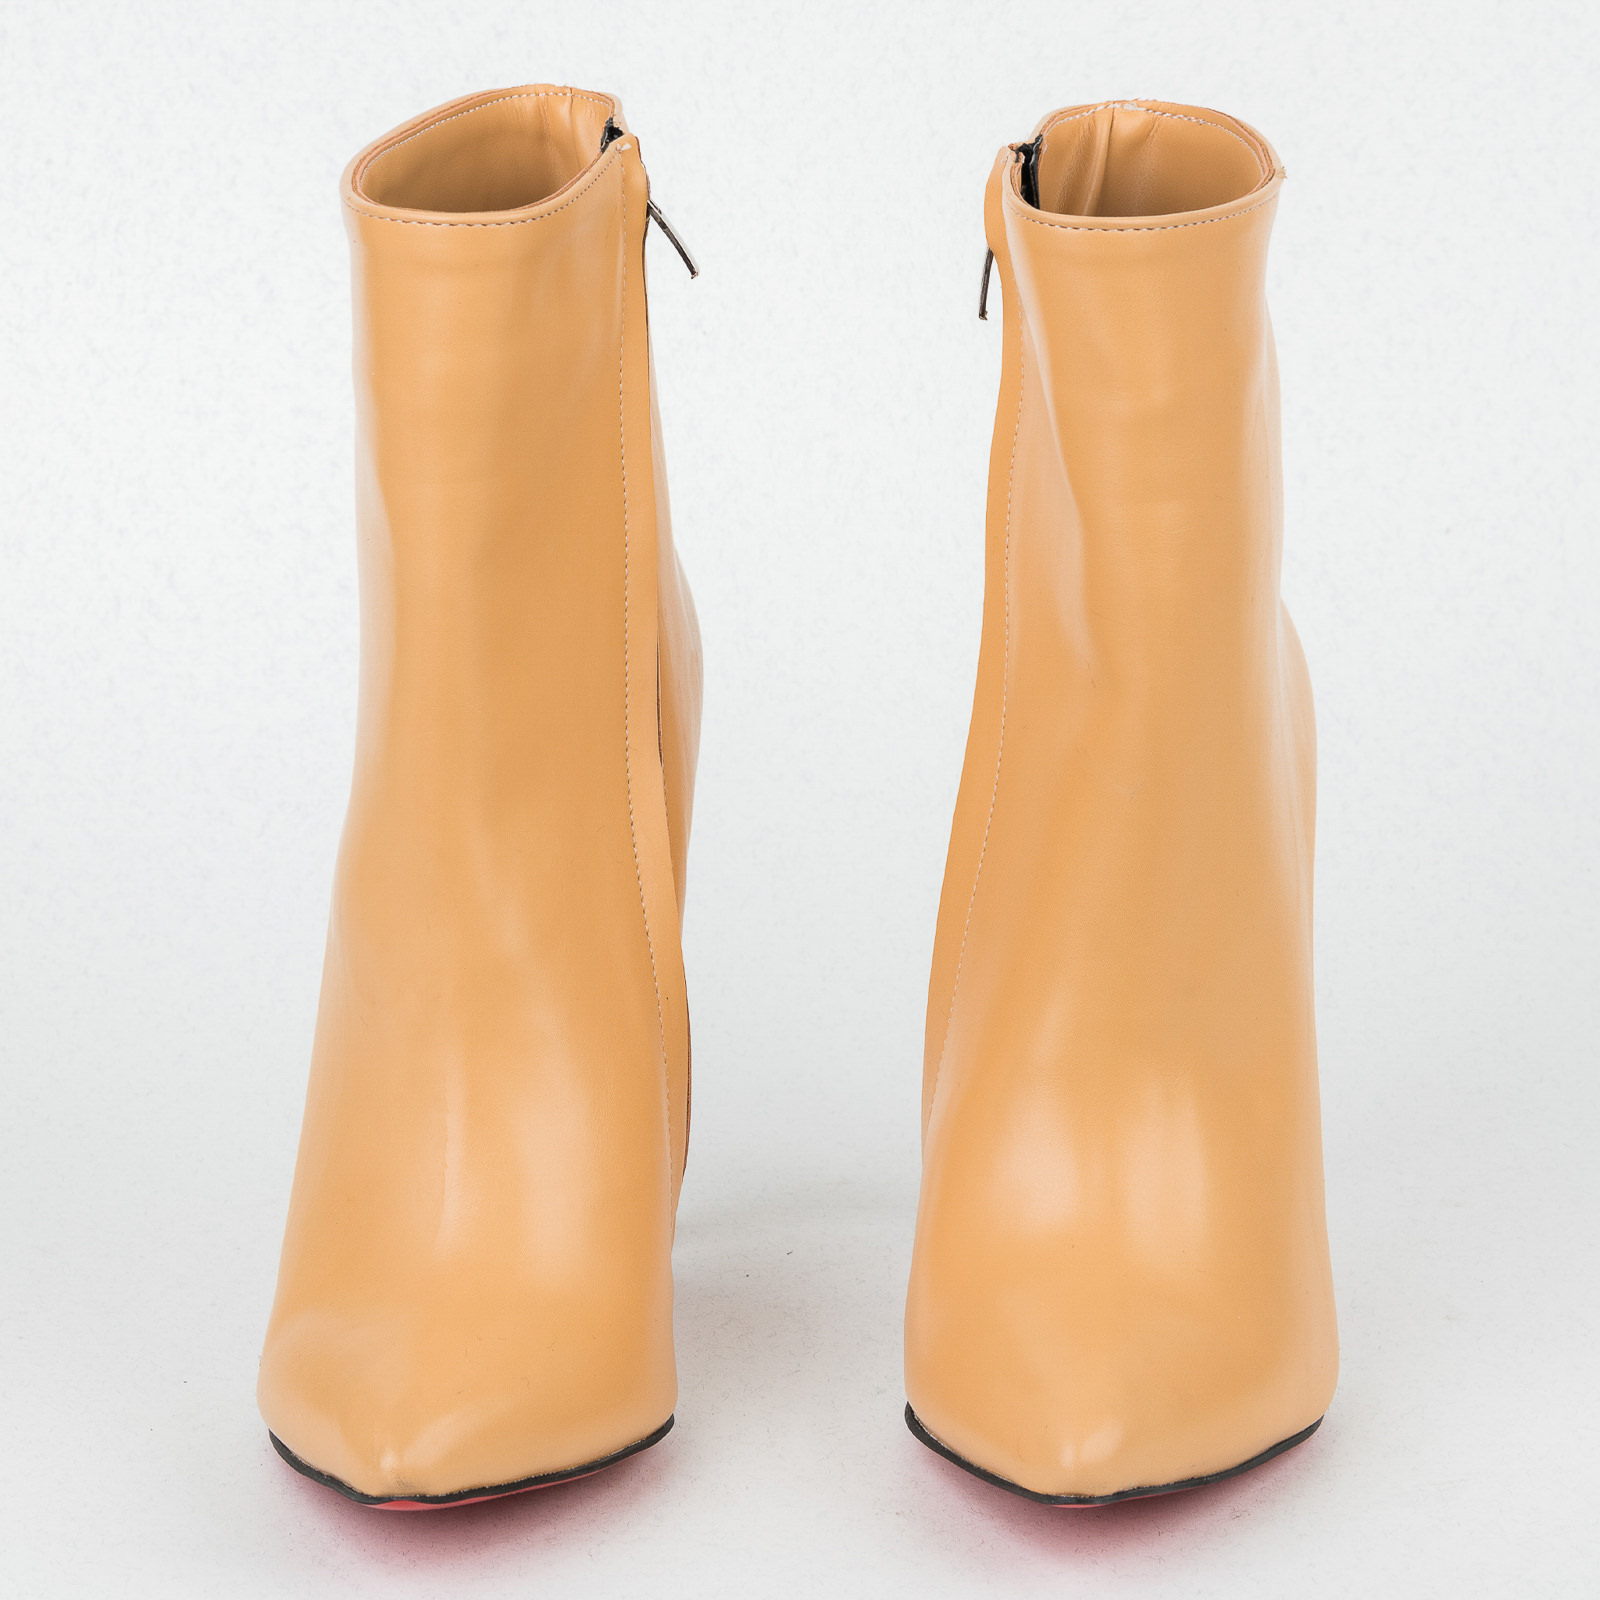 Women ankle boots B421 - BEIGE